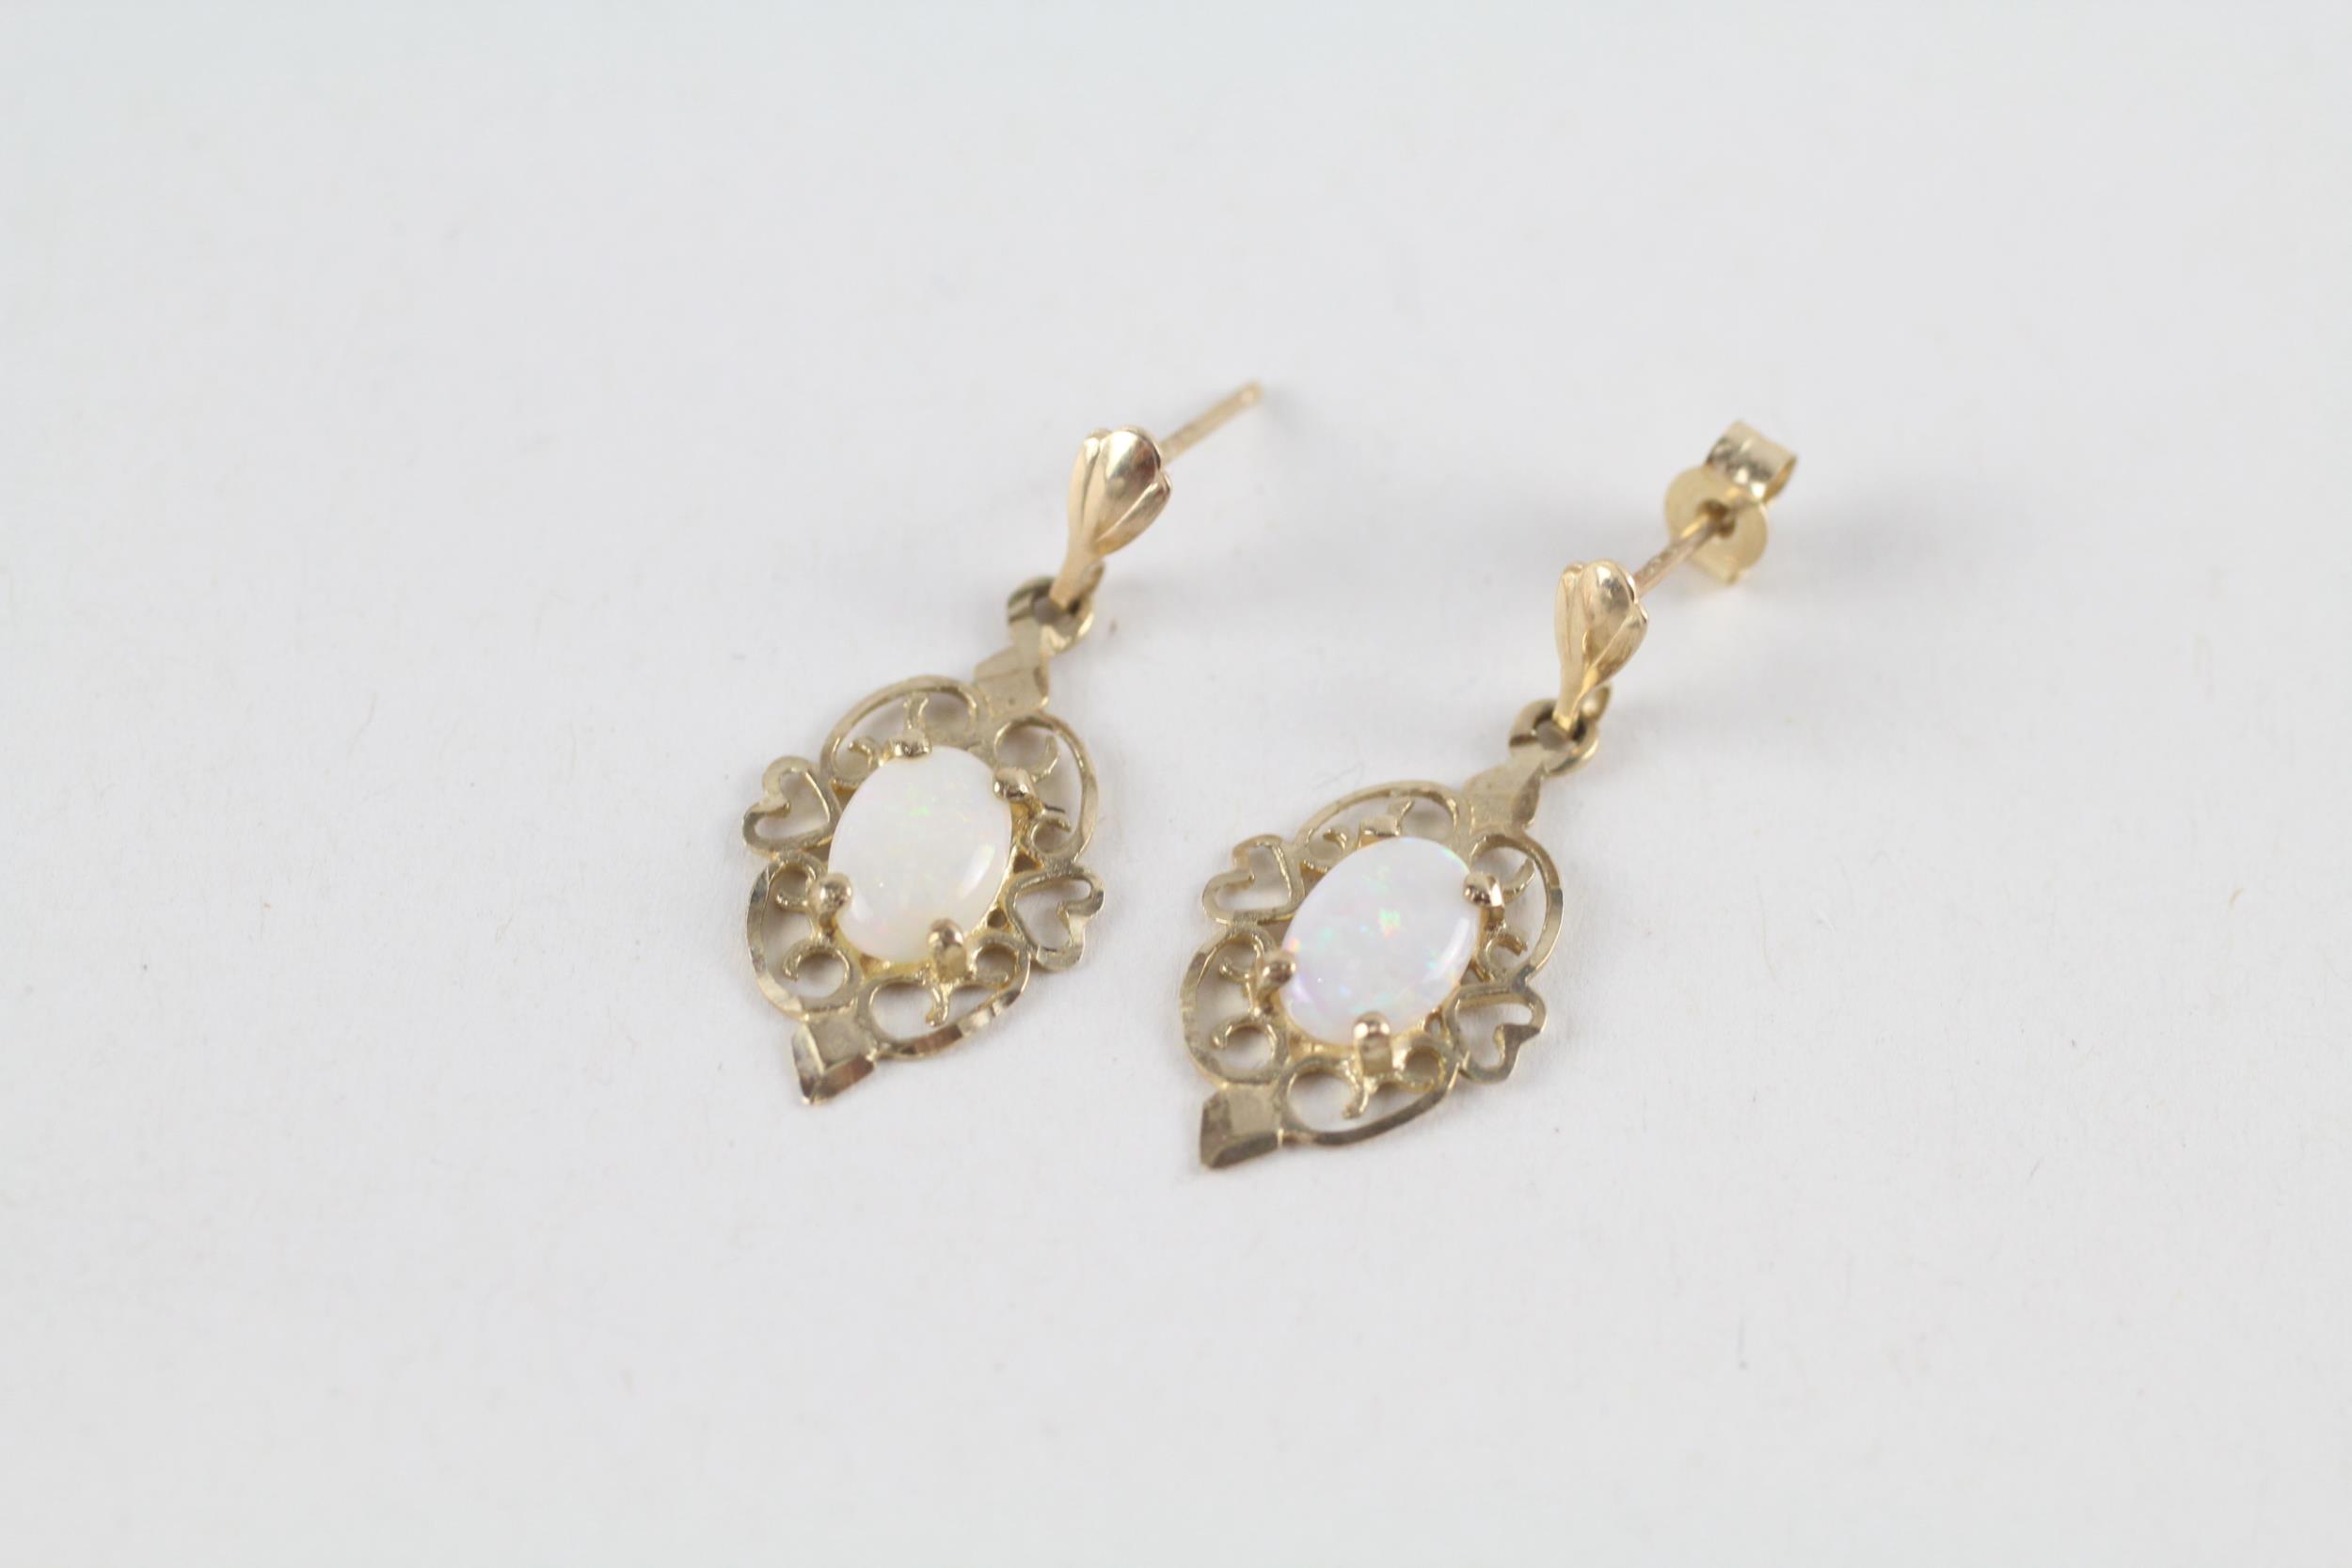 9ct gold opal drop earrings (1.2g)